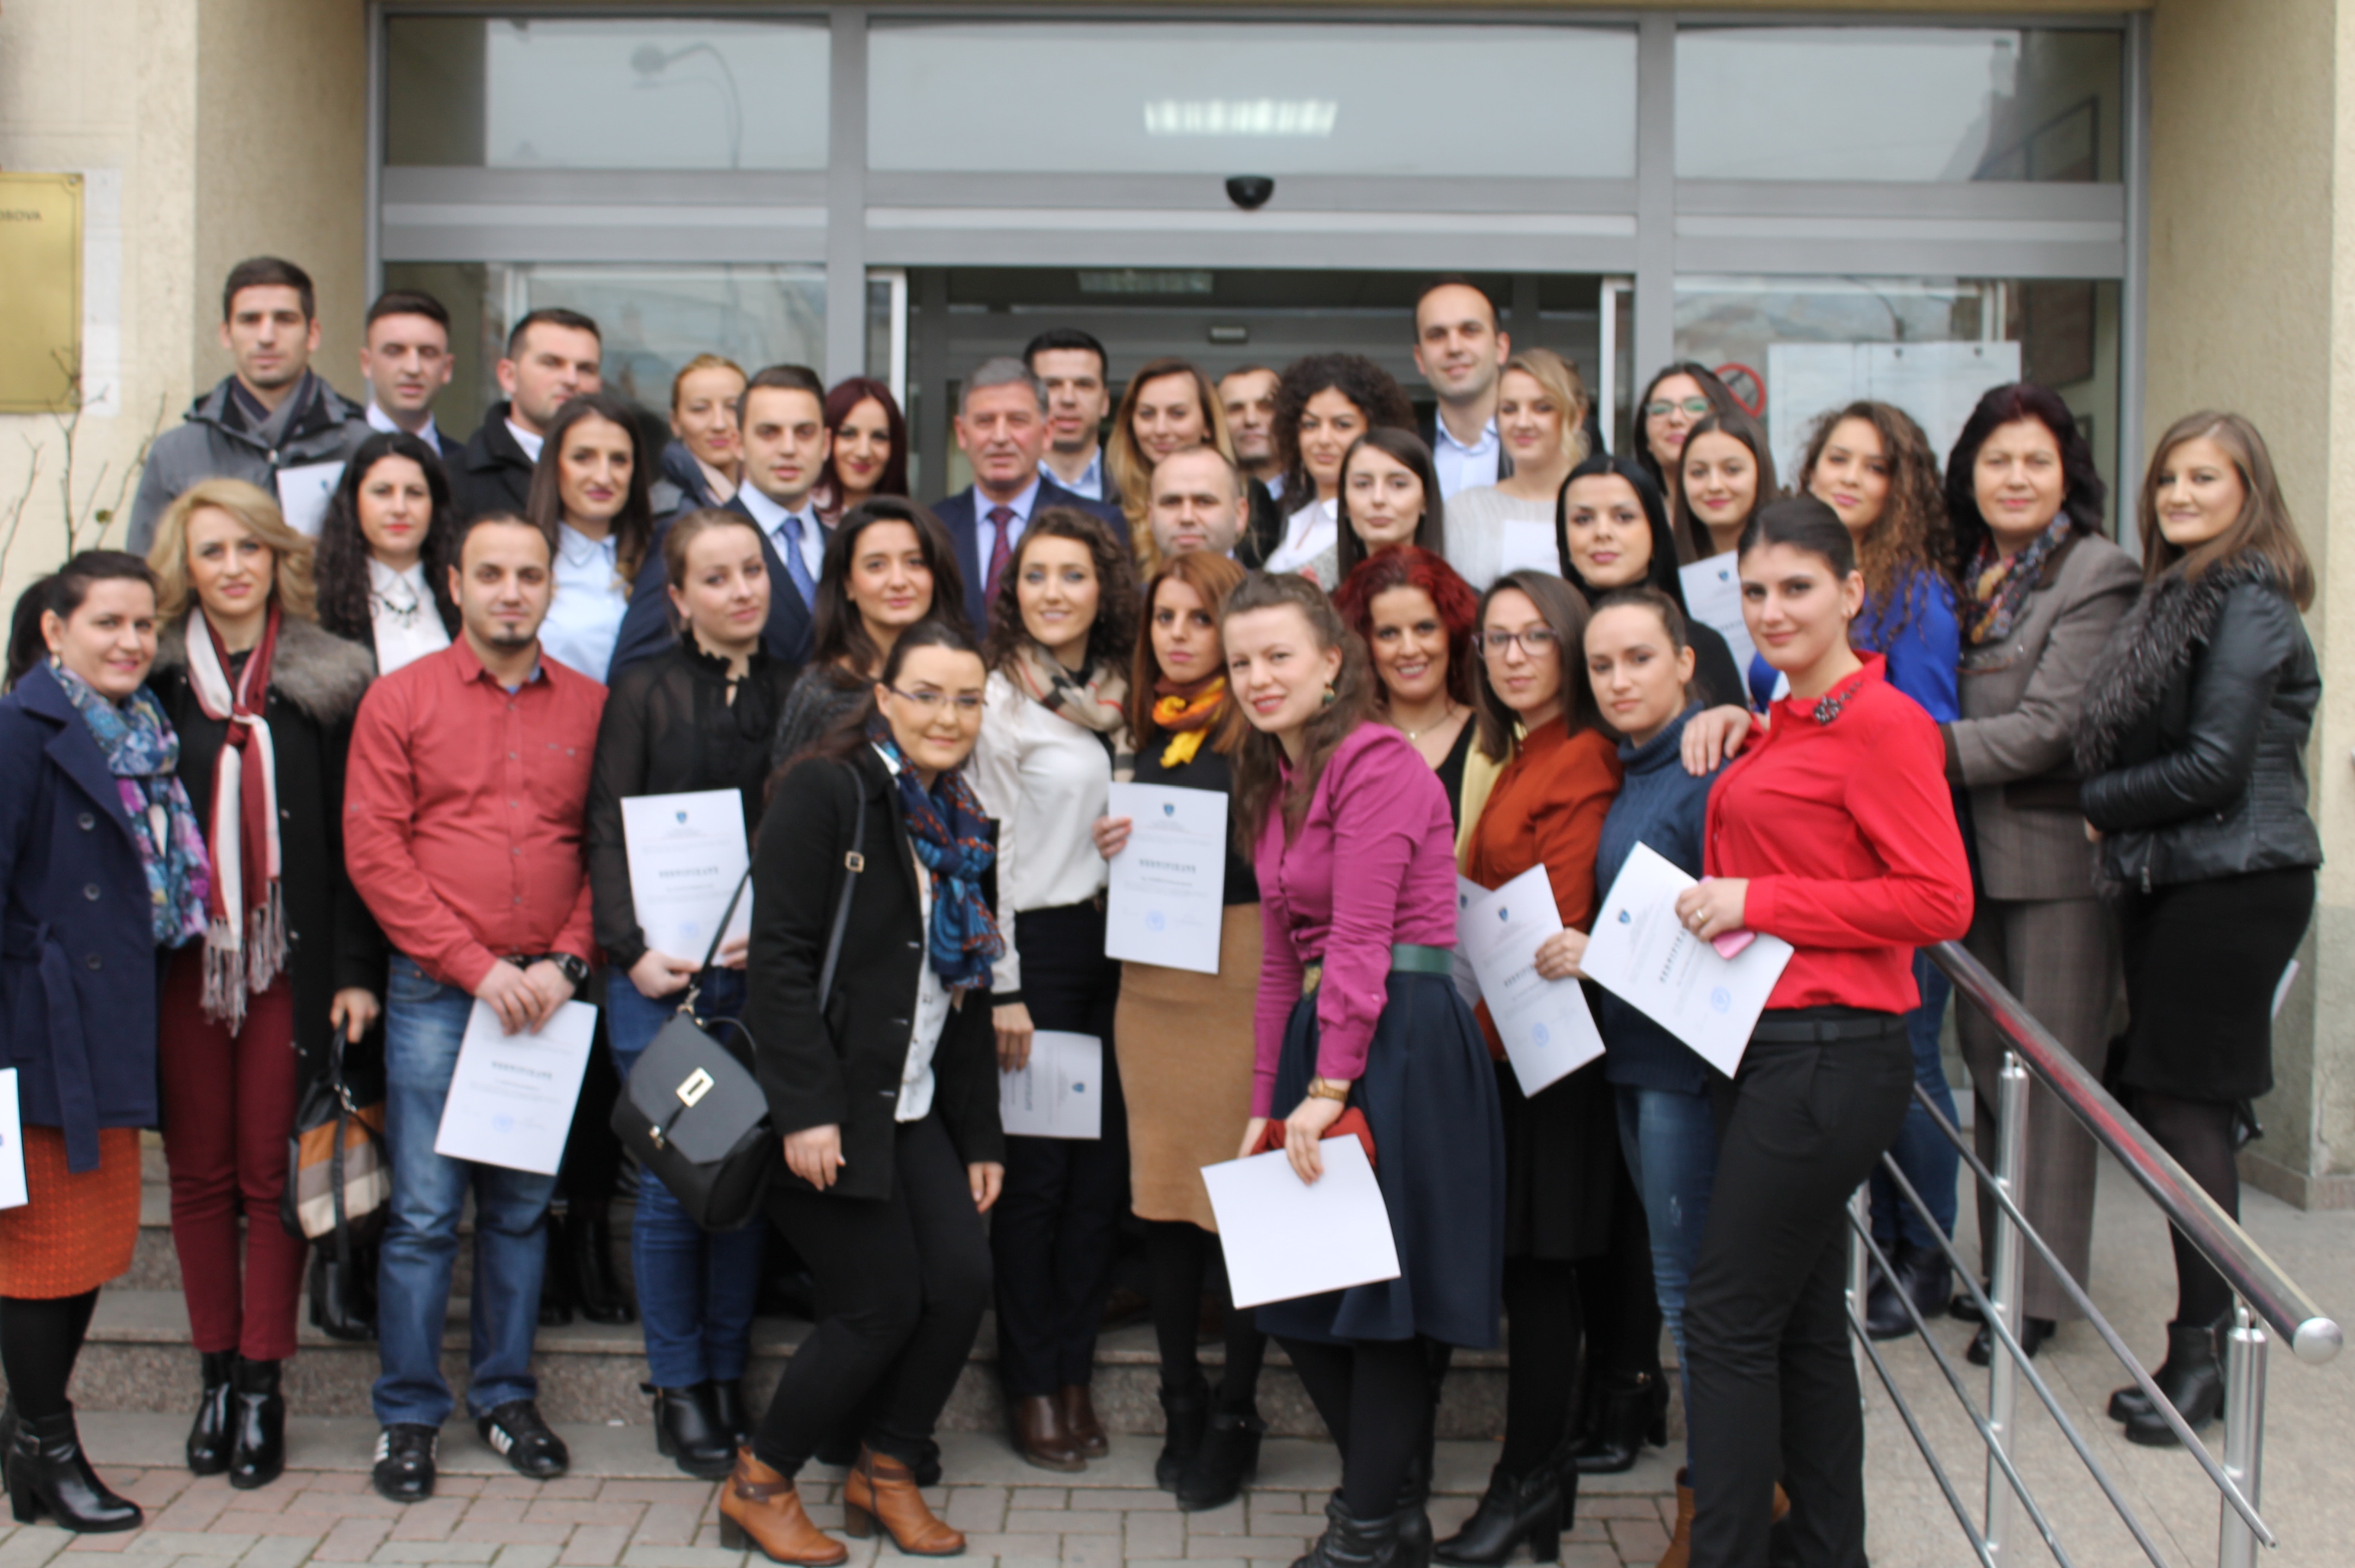 Tridhjetetetë (38) praktikantë përfunduan praktikën njëvjeçare në Gjykatën Themelore të Prizrenit